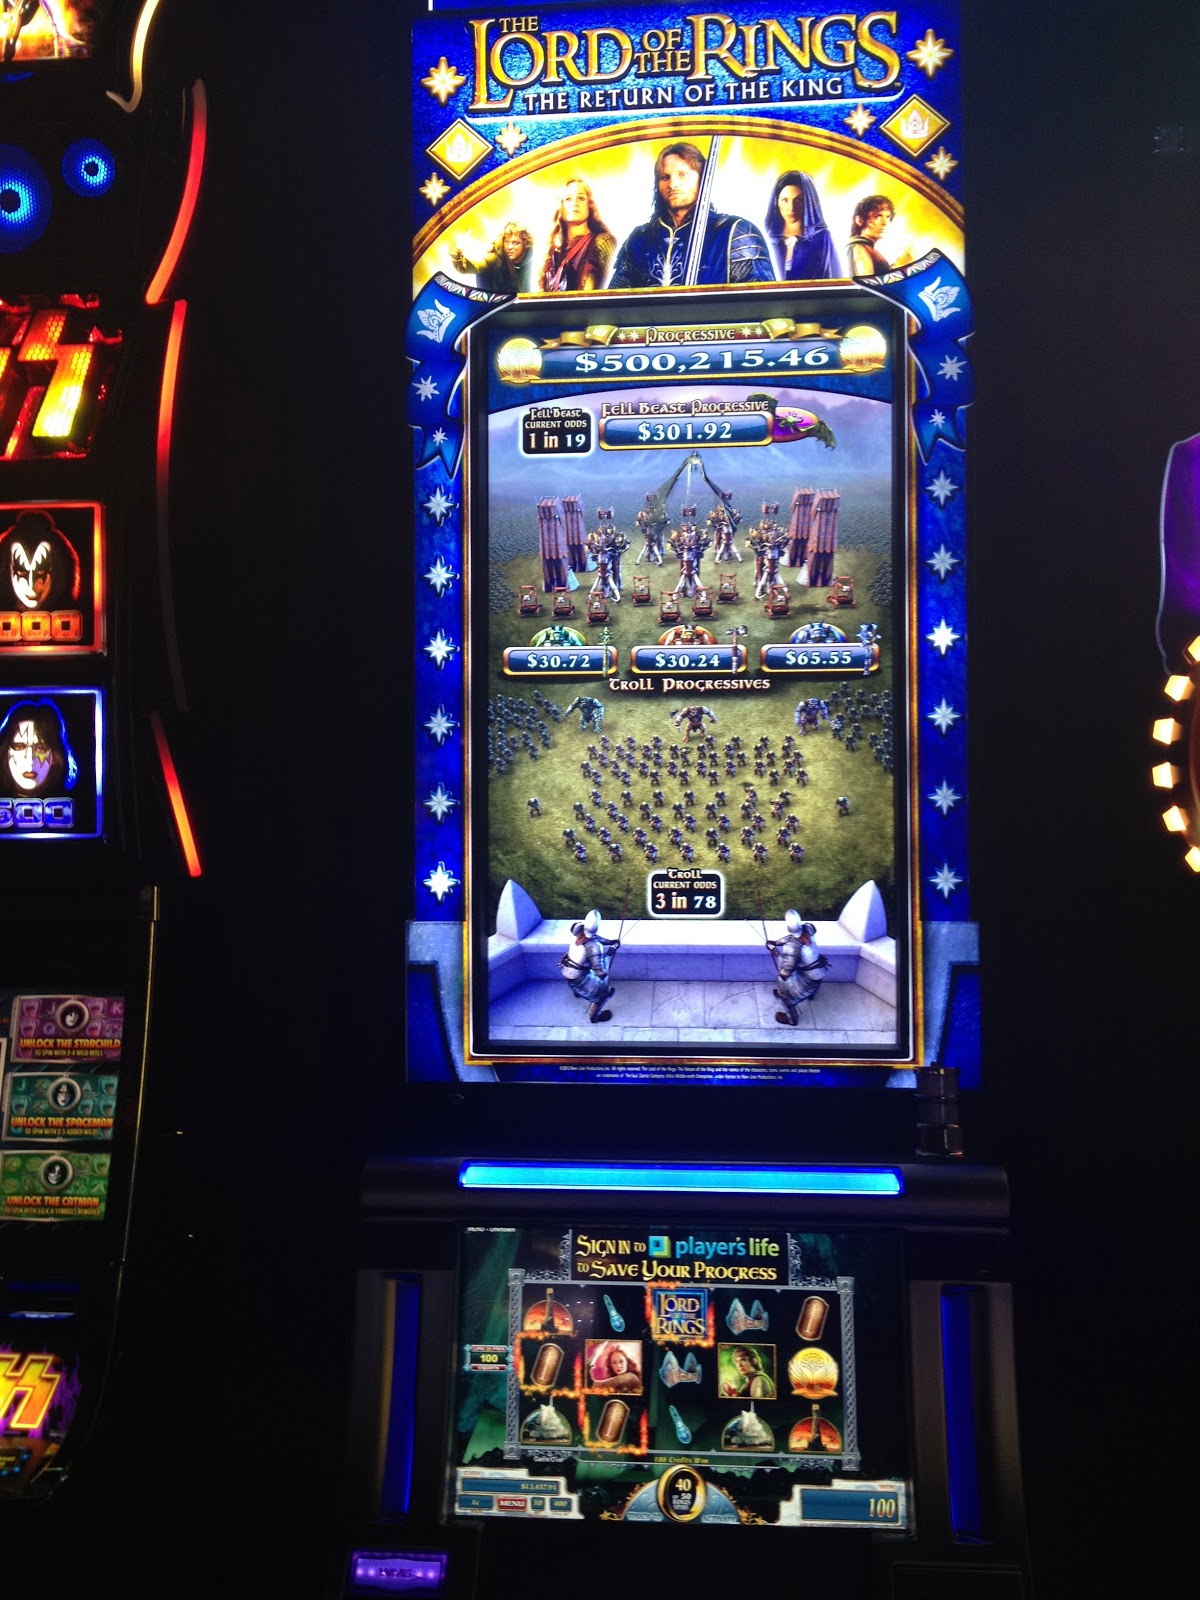 Jackpot Factory Slot Machine